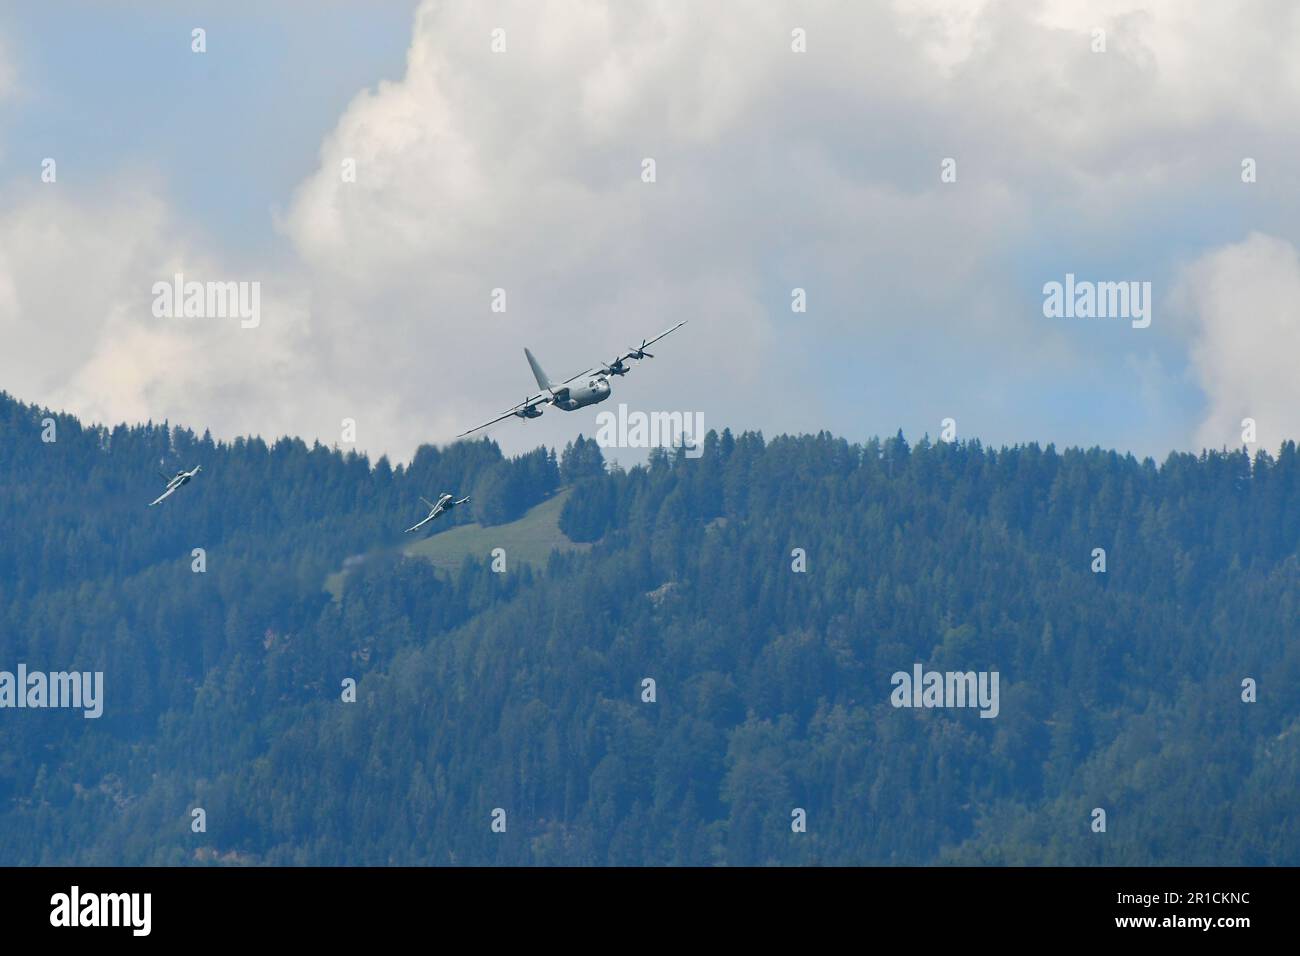 Zeltweg, Autriche - 03 septembre 2022 : spectacle aérien public en Styrie appelé Airpower 22, exposition de vol - deux avions Eurofighter Typhoon poursuivent un C-13 Banque D'Images